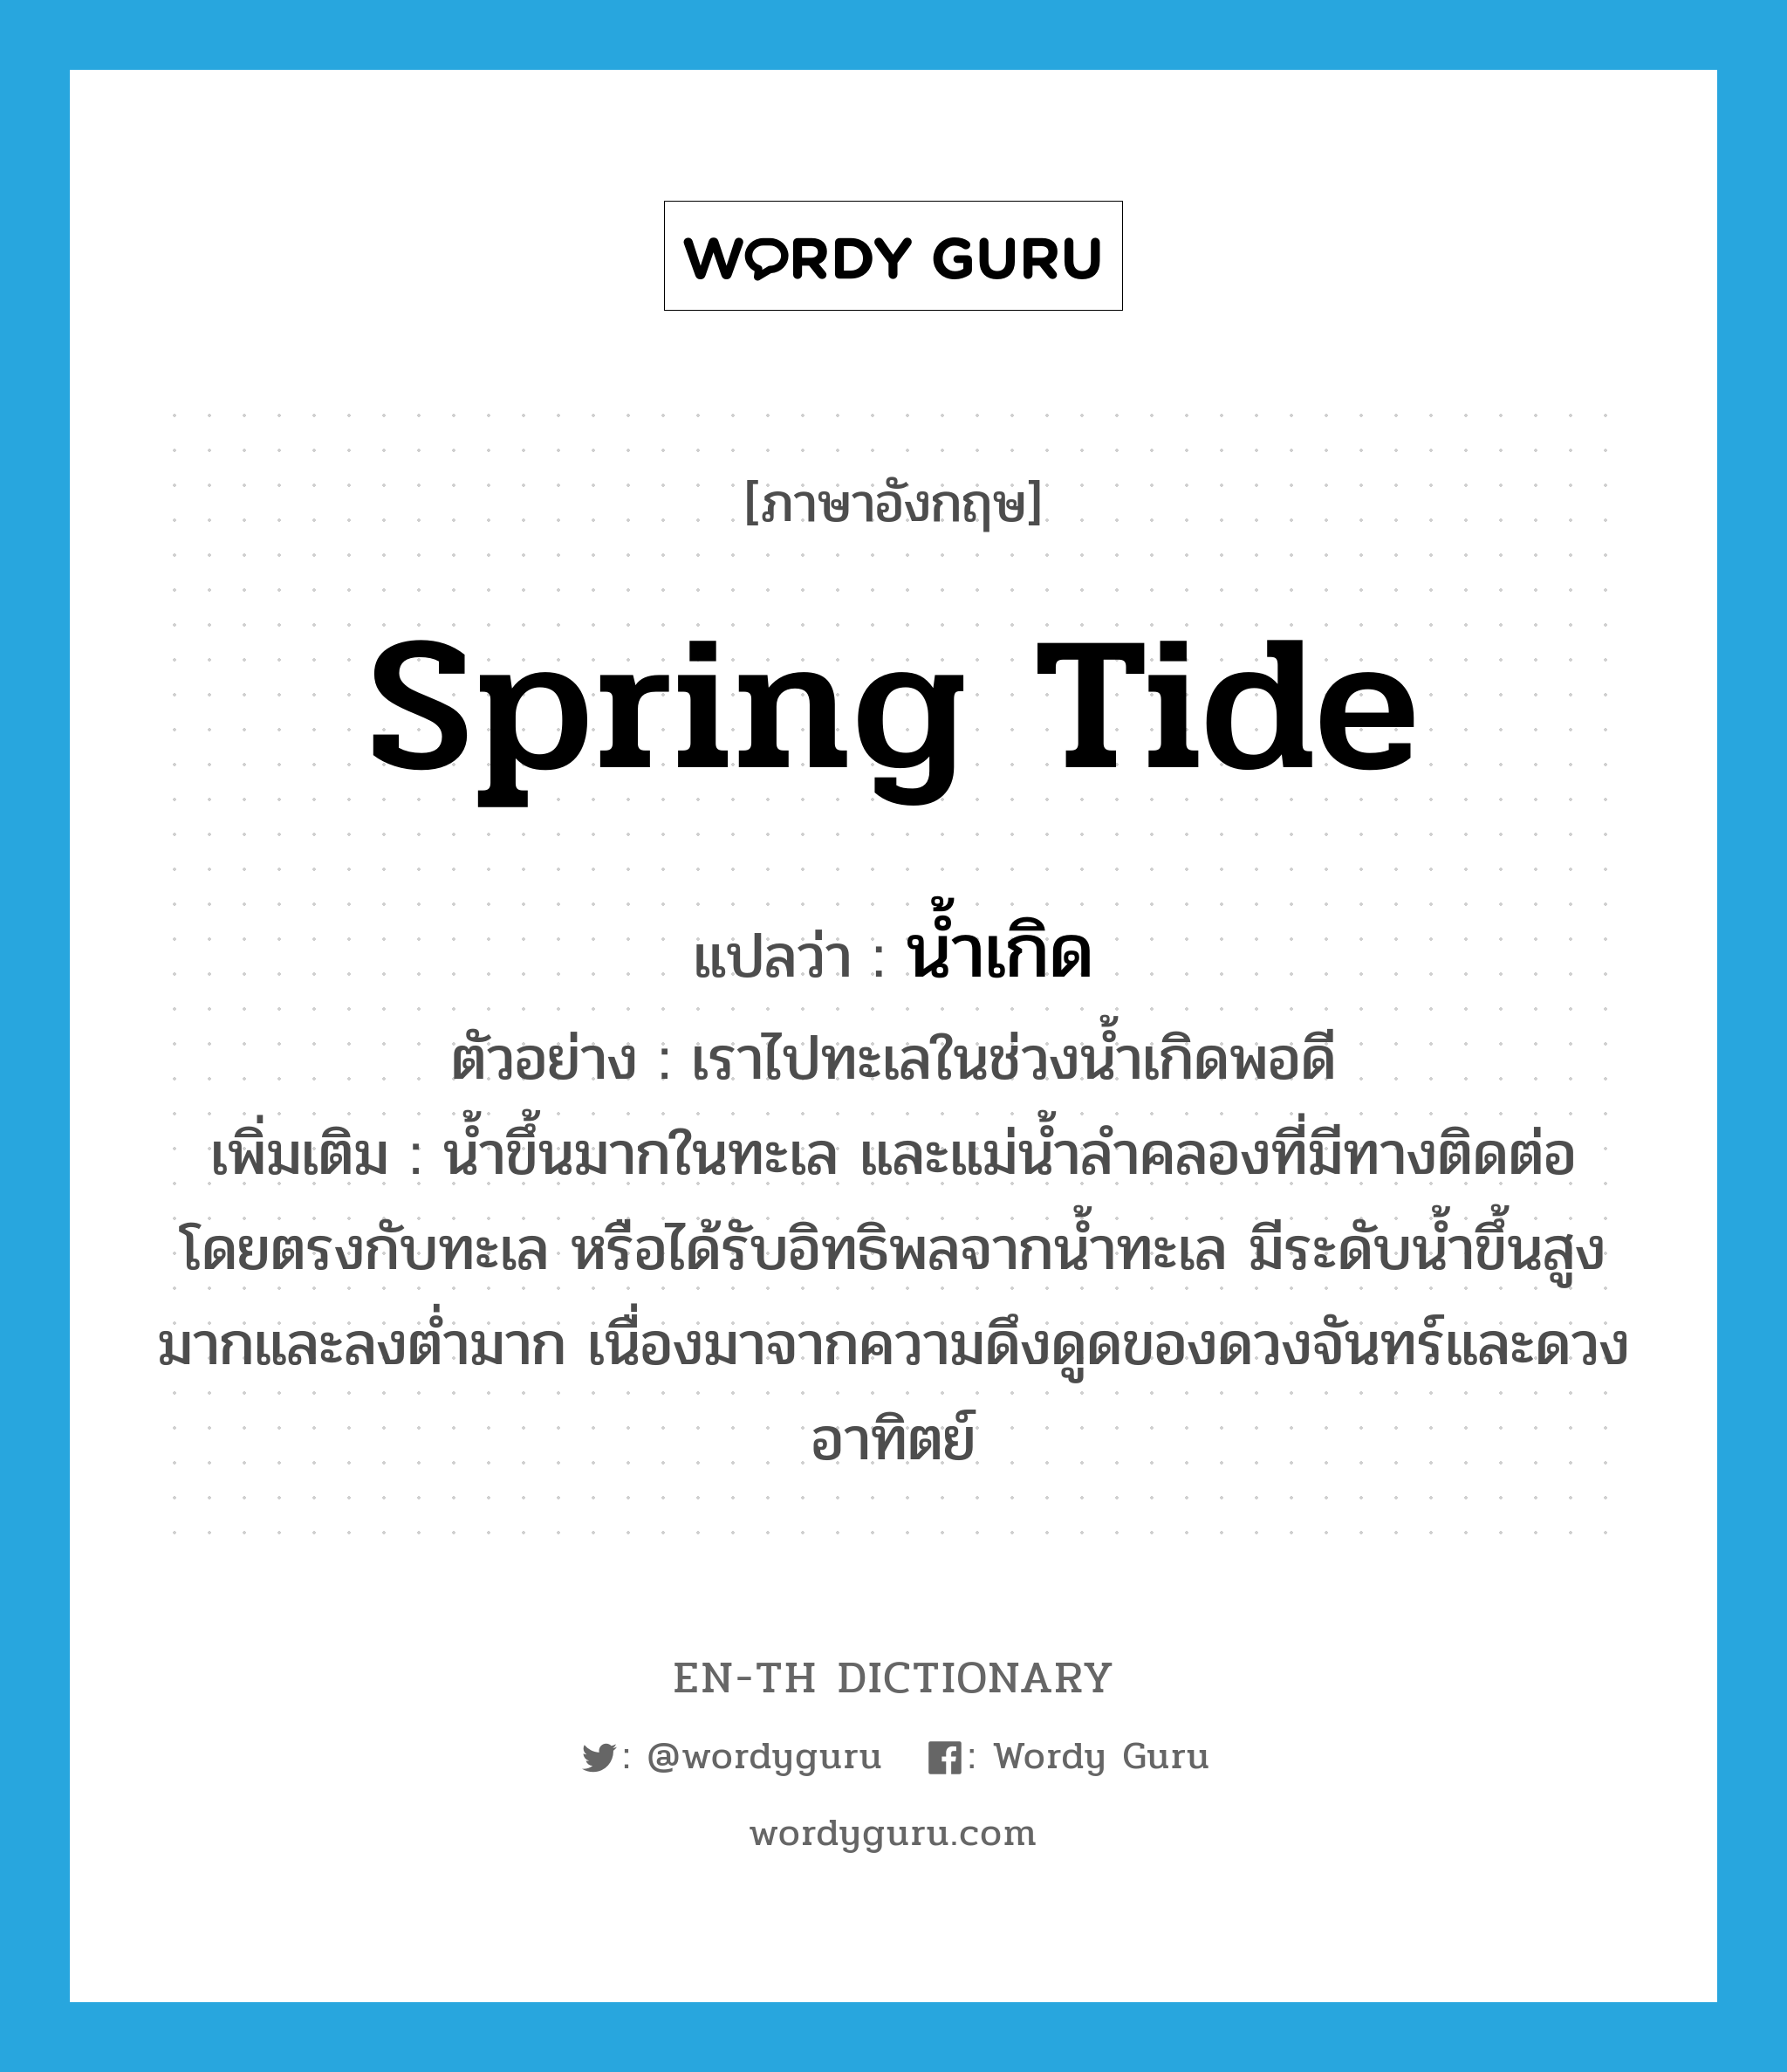 spring tide แปลว่า?, คำศัพท์ภาษาอังกฤษ spring tide แปลว่า น้ำเกิด ประเภท N ตัวอย่าง เราไปทะเลในช่วงน้ำเกิดพอดี เพิ่มเติม น้ำขึ้นมากในทะเล และแม่น้ำลำคลองที่มีทางติดต่อโดยตรงกับทะเล หรือได้รับอิทธิพลจากน้ำทะเล มีระดับน้ำขึ้นสูงมากและลงต่ำมาก เนื่องมาจากความดึงดูดของดวงจันทร์และดวงอาทิตย์ หมวด N